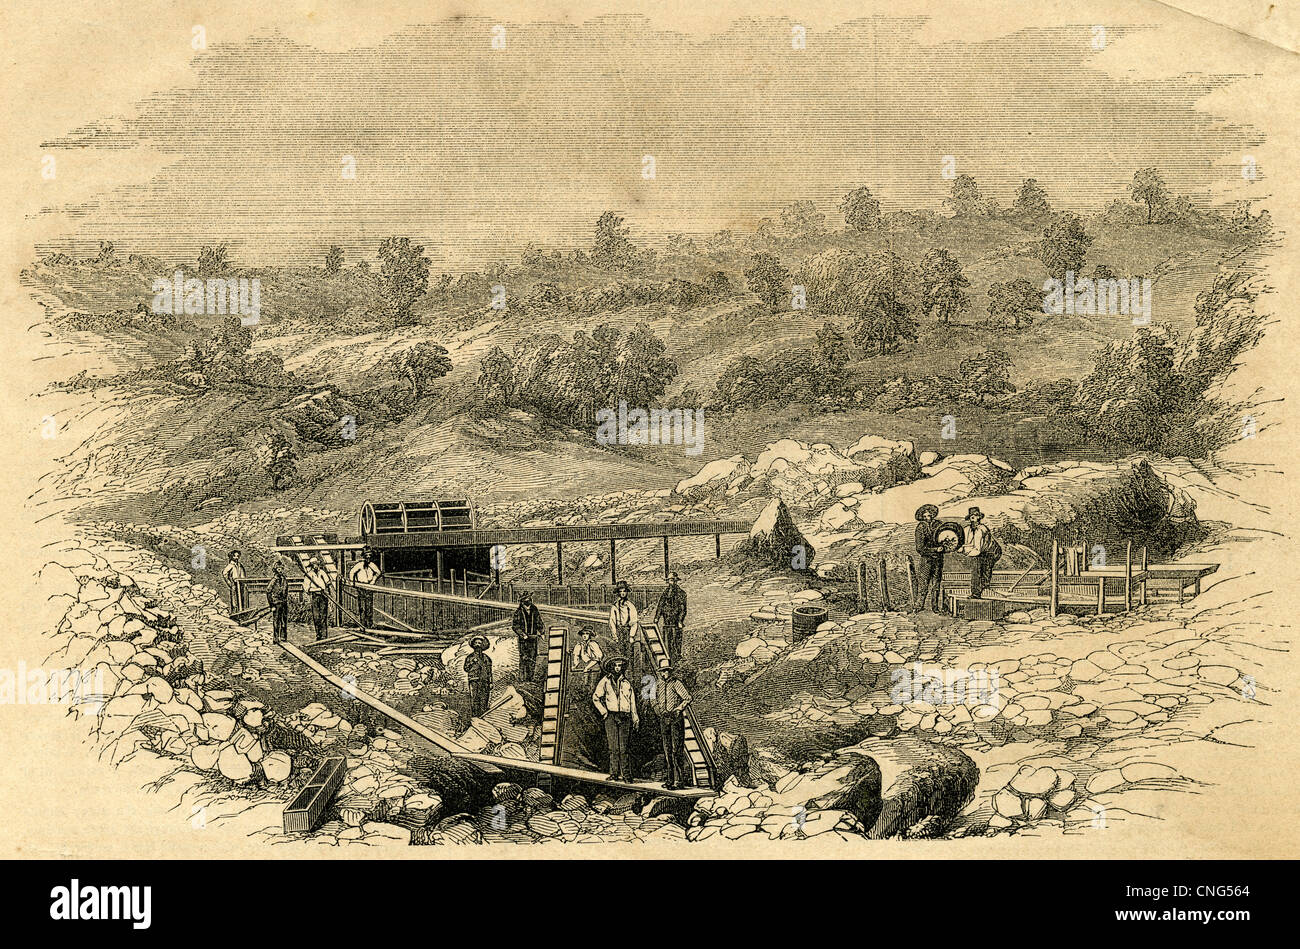 1854-Gravur, Vorstellung des Unternehmens arbeitet bei Bartons Bar, Kalifornien. Goldrausch in Kalifornien! Stockfoto